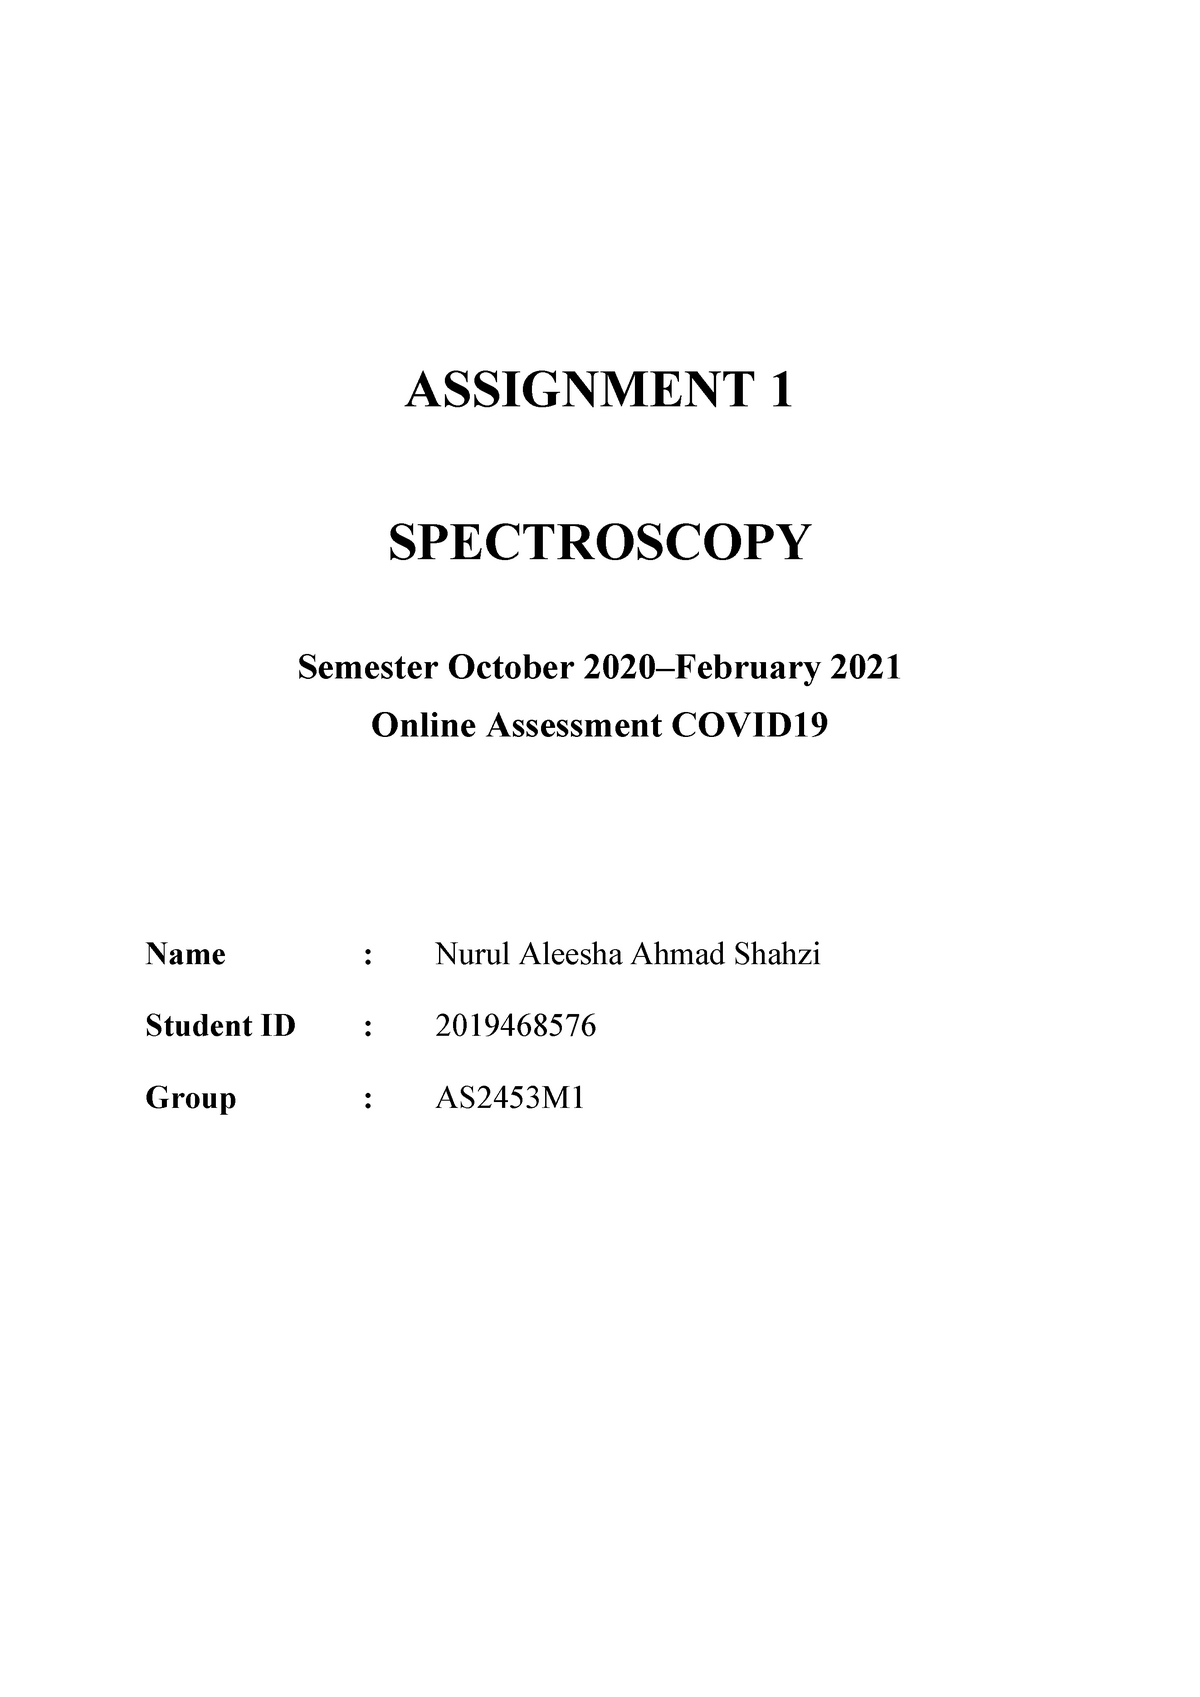 Spectroscopy Assignment - ASSIGNMENT 1 SPECTROSCOPY Semester October ...